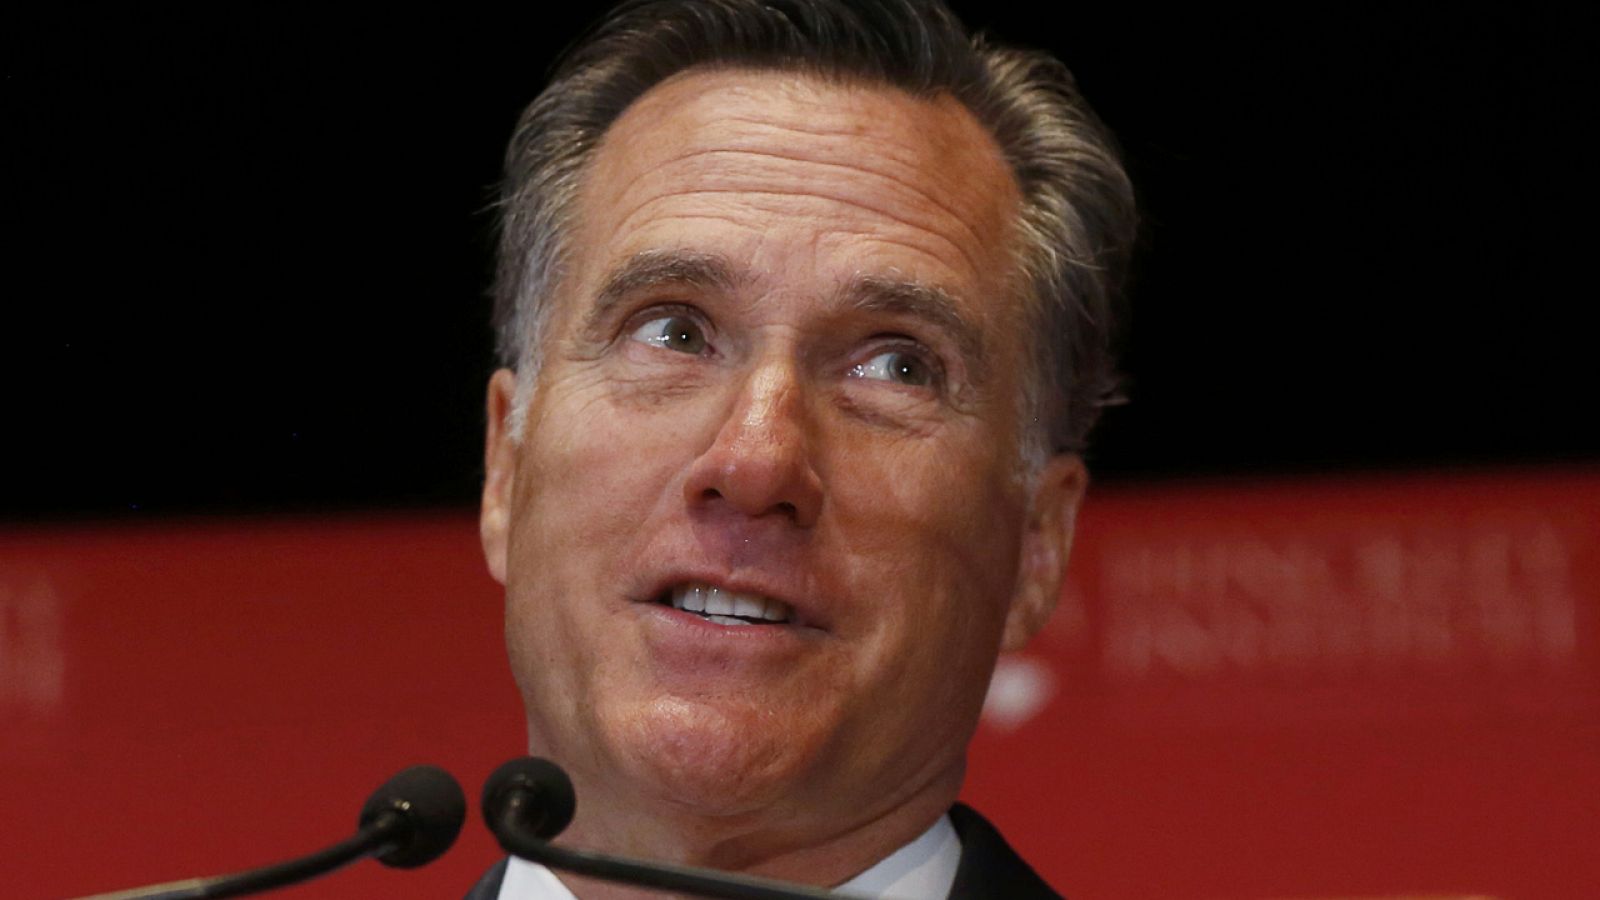 El ex candidato republicano Mitt Romney critica en un discurso al postulante a la nominación conservadora Donald Trump